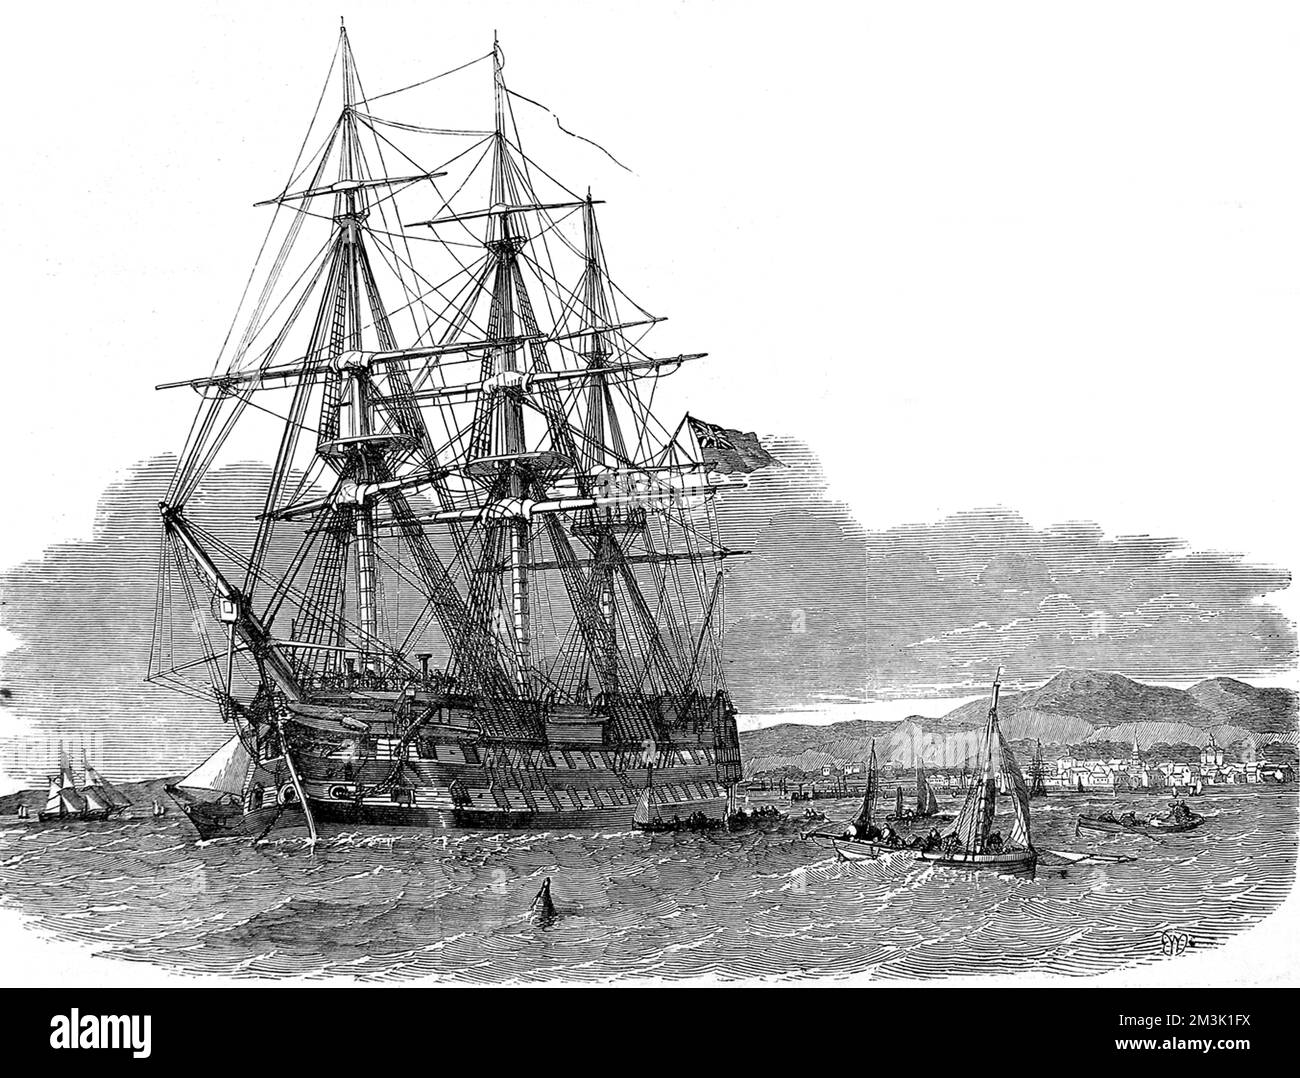 Gravure montrant le navire émigré « Hercules » à l'ancre dans le port de Campbelton, île de Skye, 1853. Les « Hercules » partirent de Skye cette année-là avec des passagers émigrant pour une nouvelle vie dans les colonies britanniques. Date: 1853 Banque D'Images